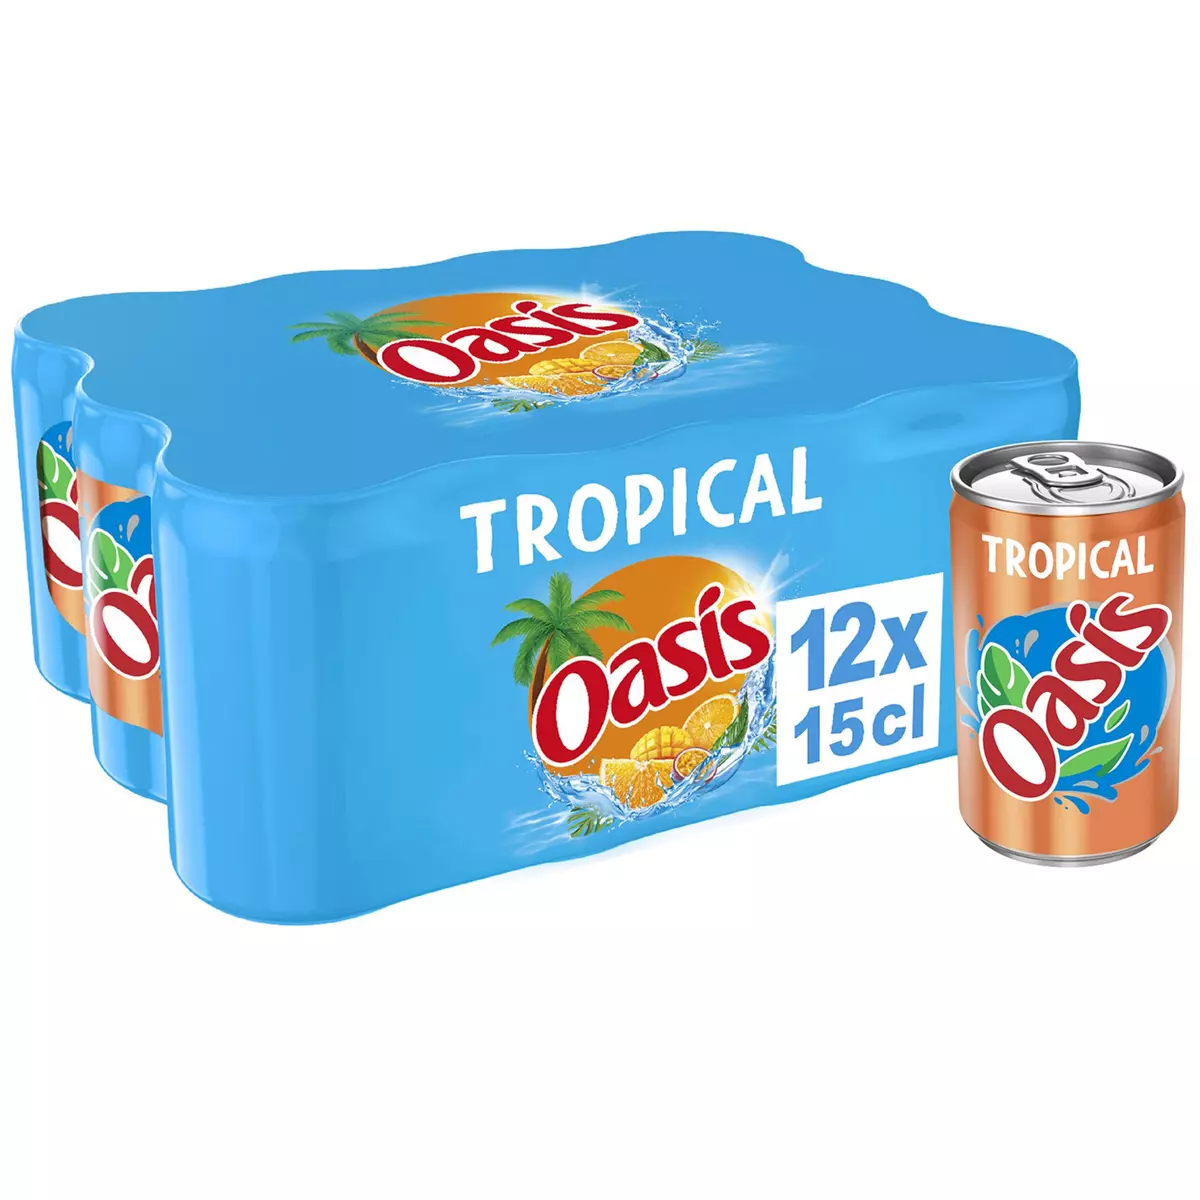 Oasis tropical - OASIS - Pack de 24 boites